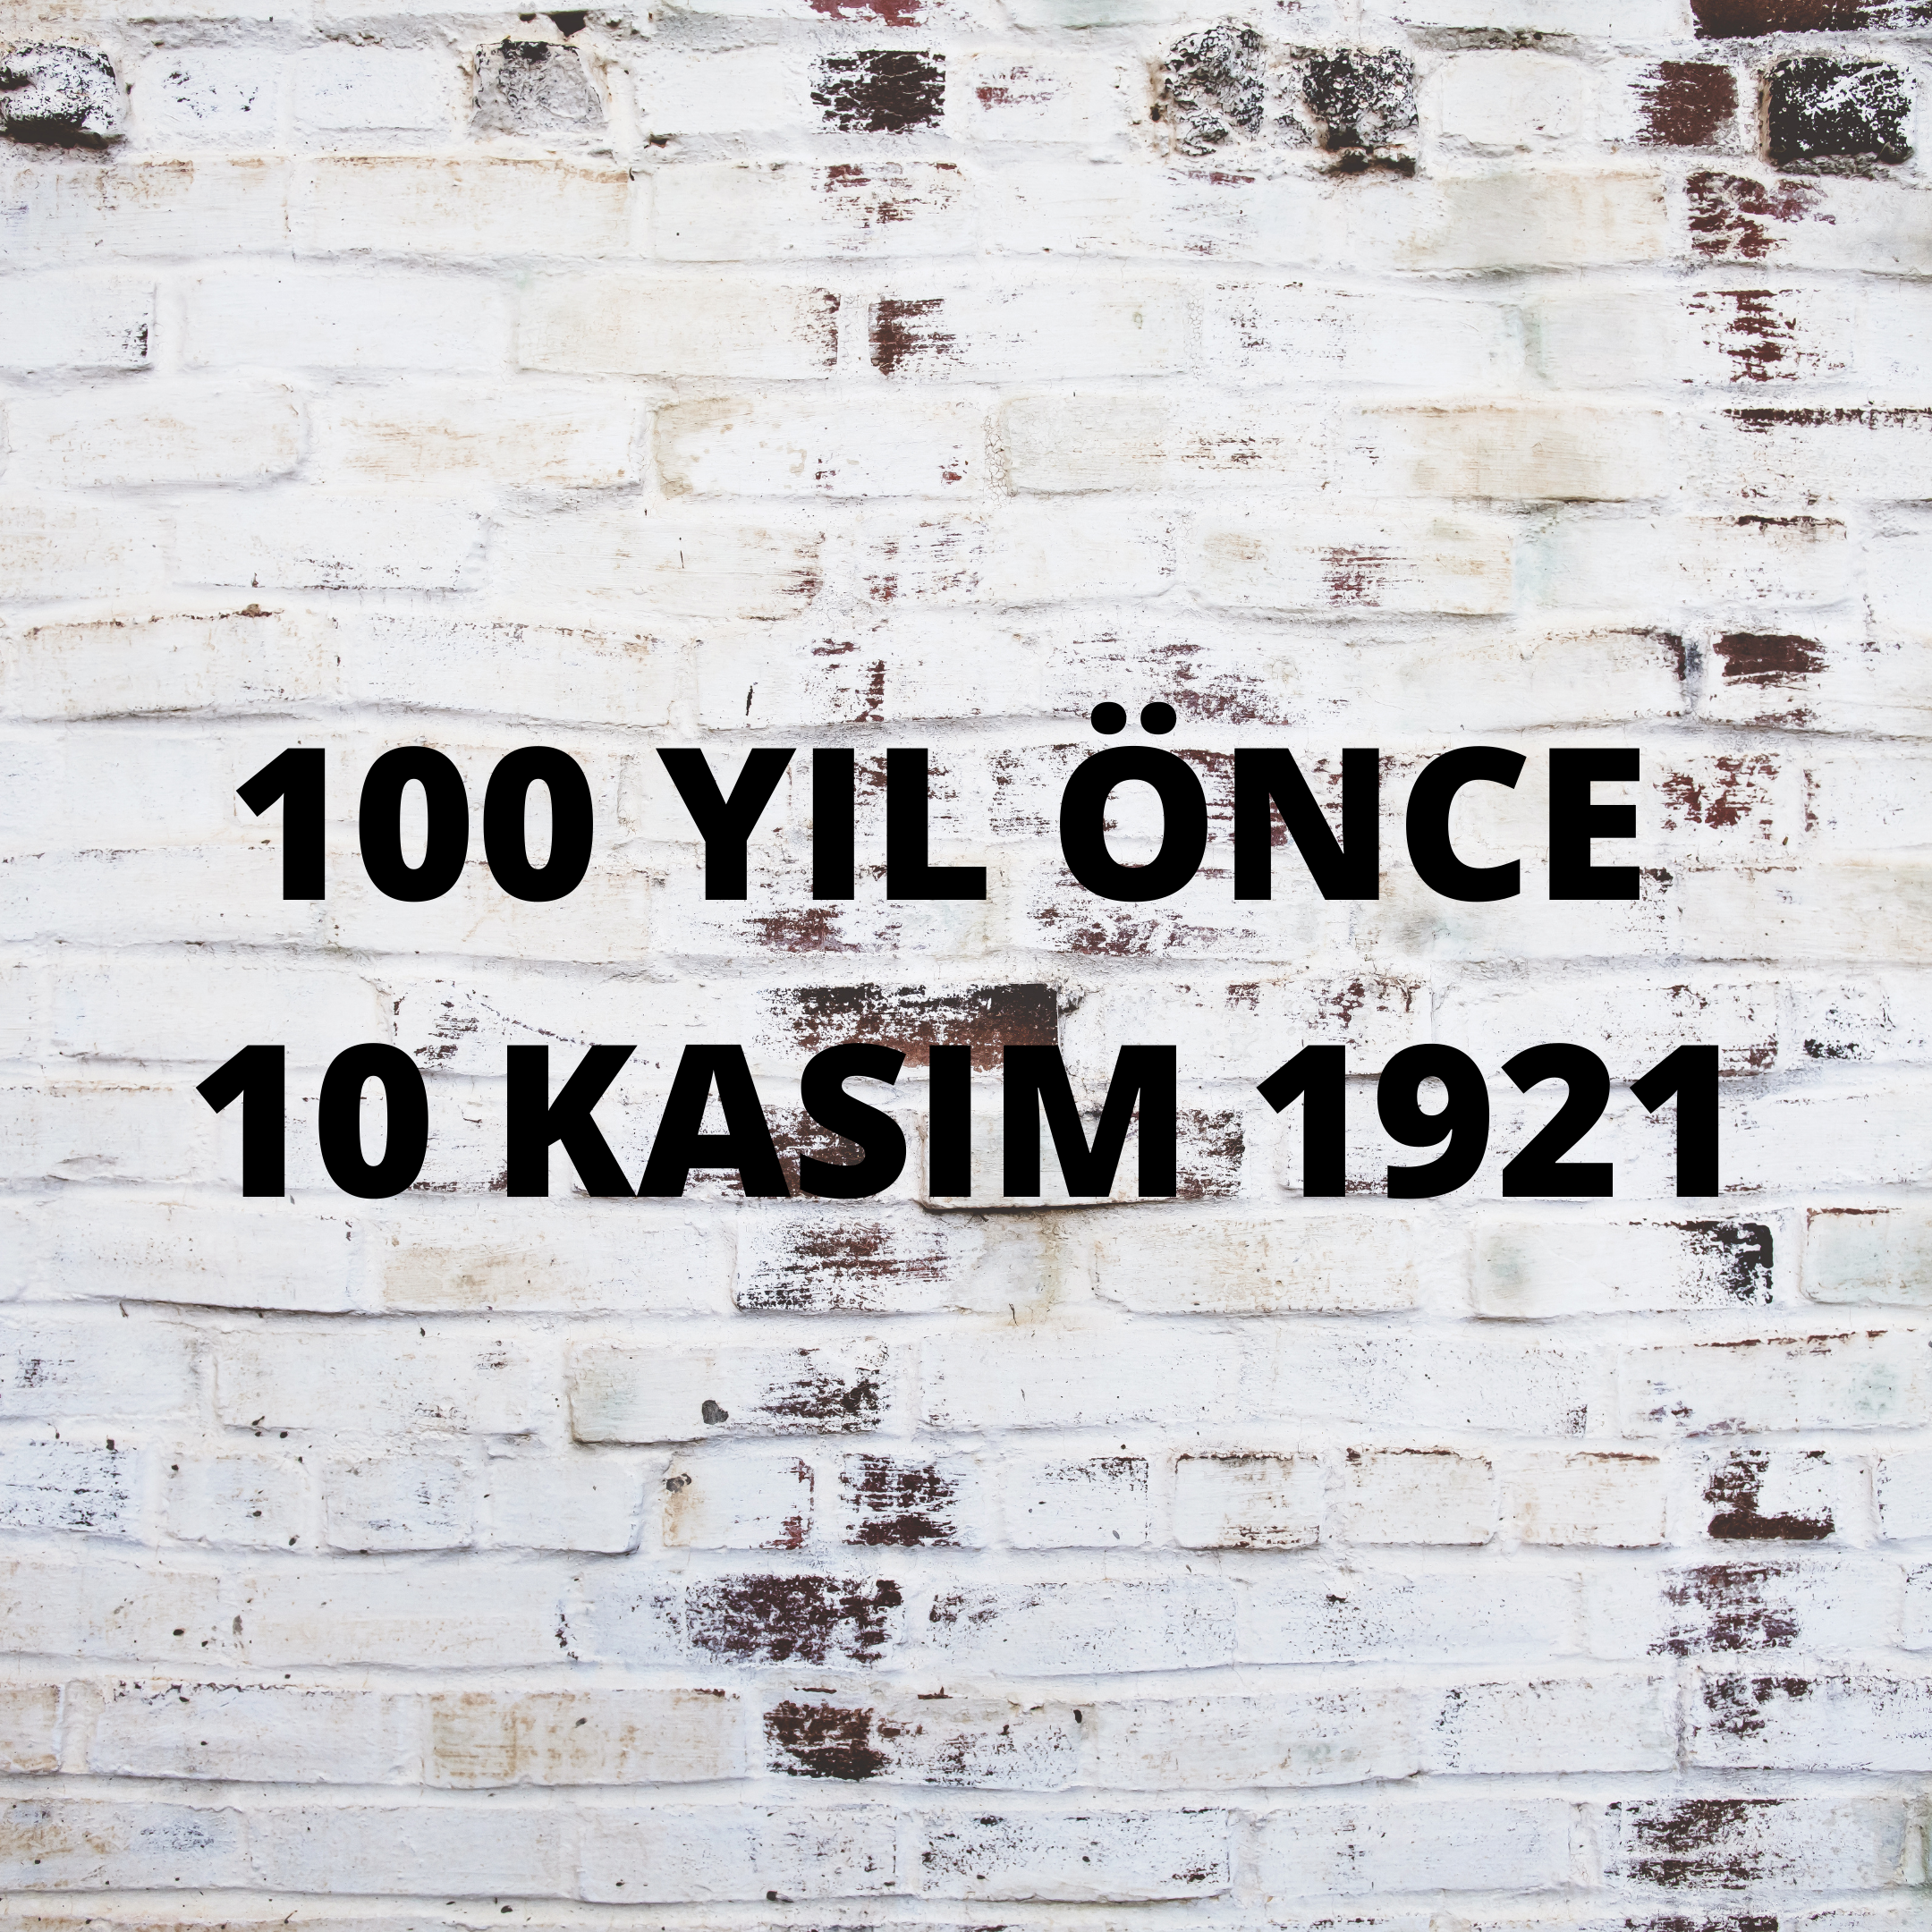 100 YIL ÖNCE 10 KASIM 1921